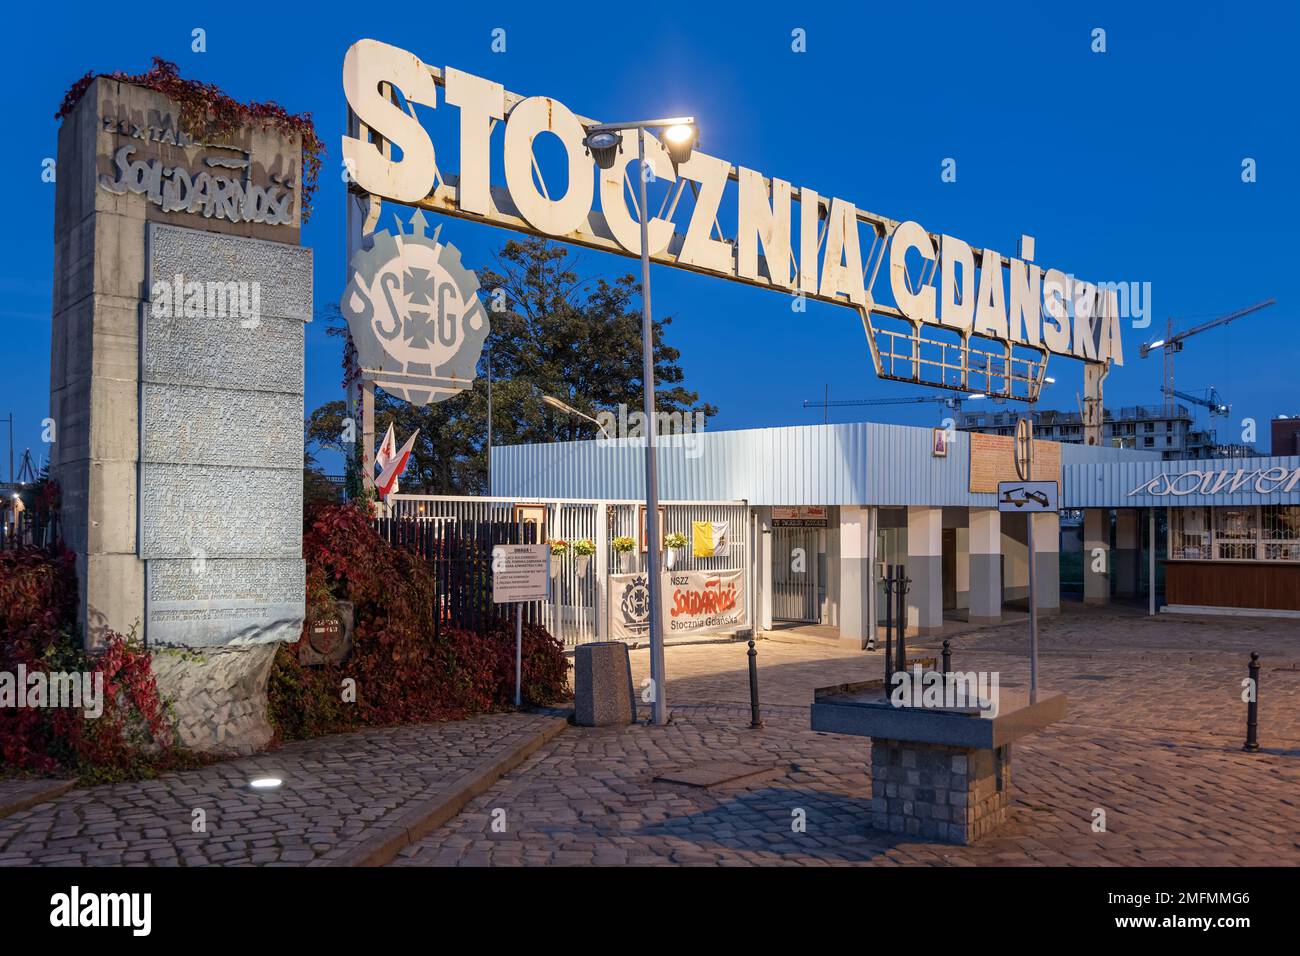 Gdansk, Pologne - 7 octobre 2022 - porte n° 2 du chantier naval de Gdańsk (en polonais : Stocznia Gdańska) la nuit, entrée historique célèbre, monument de la ville an Banque D'Images